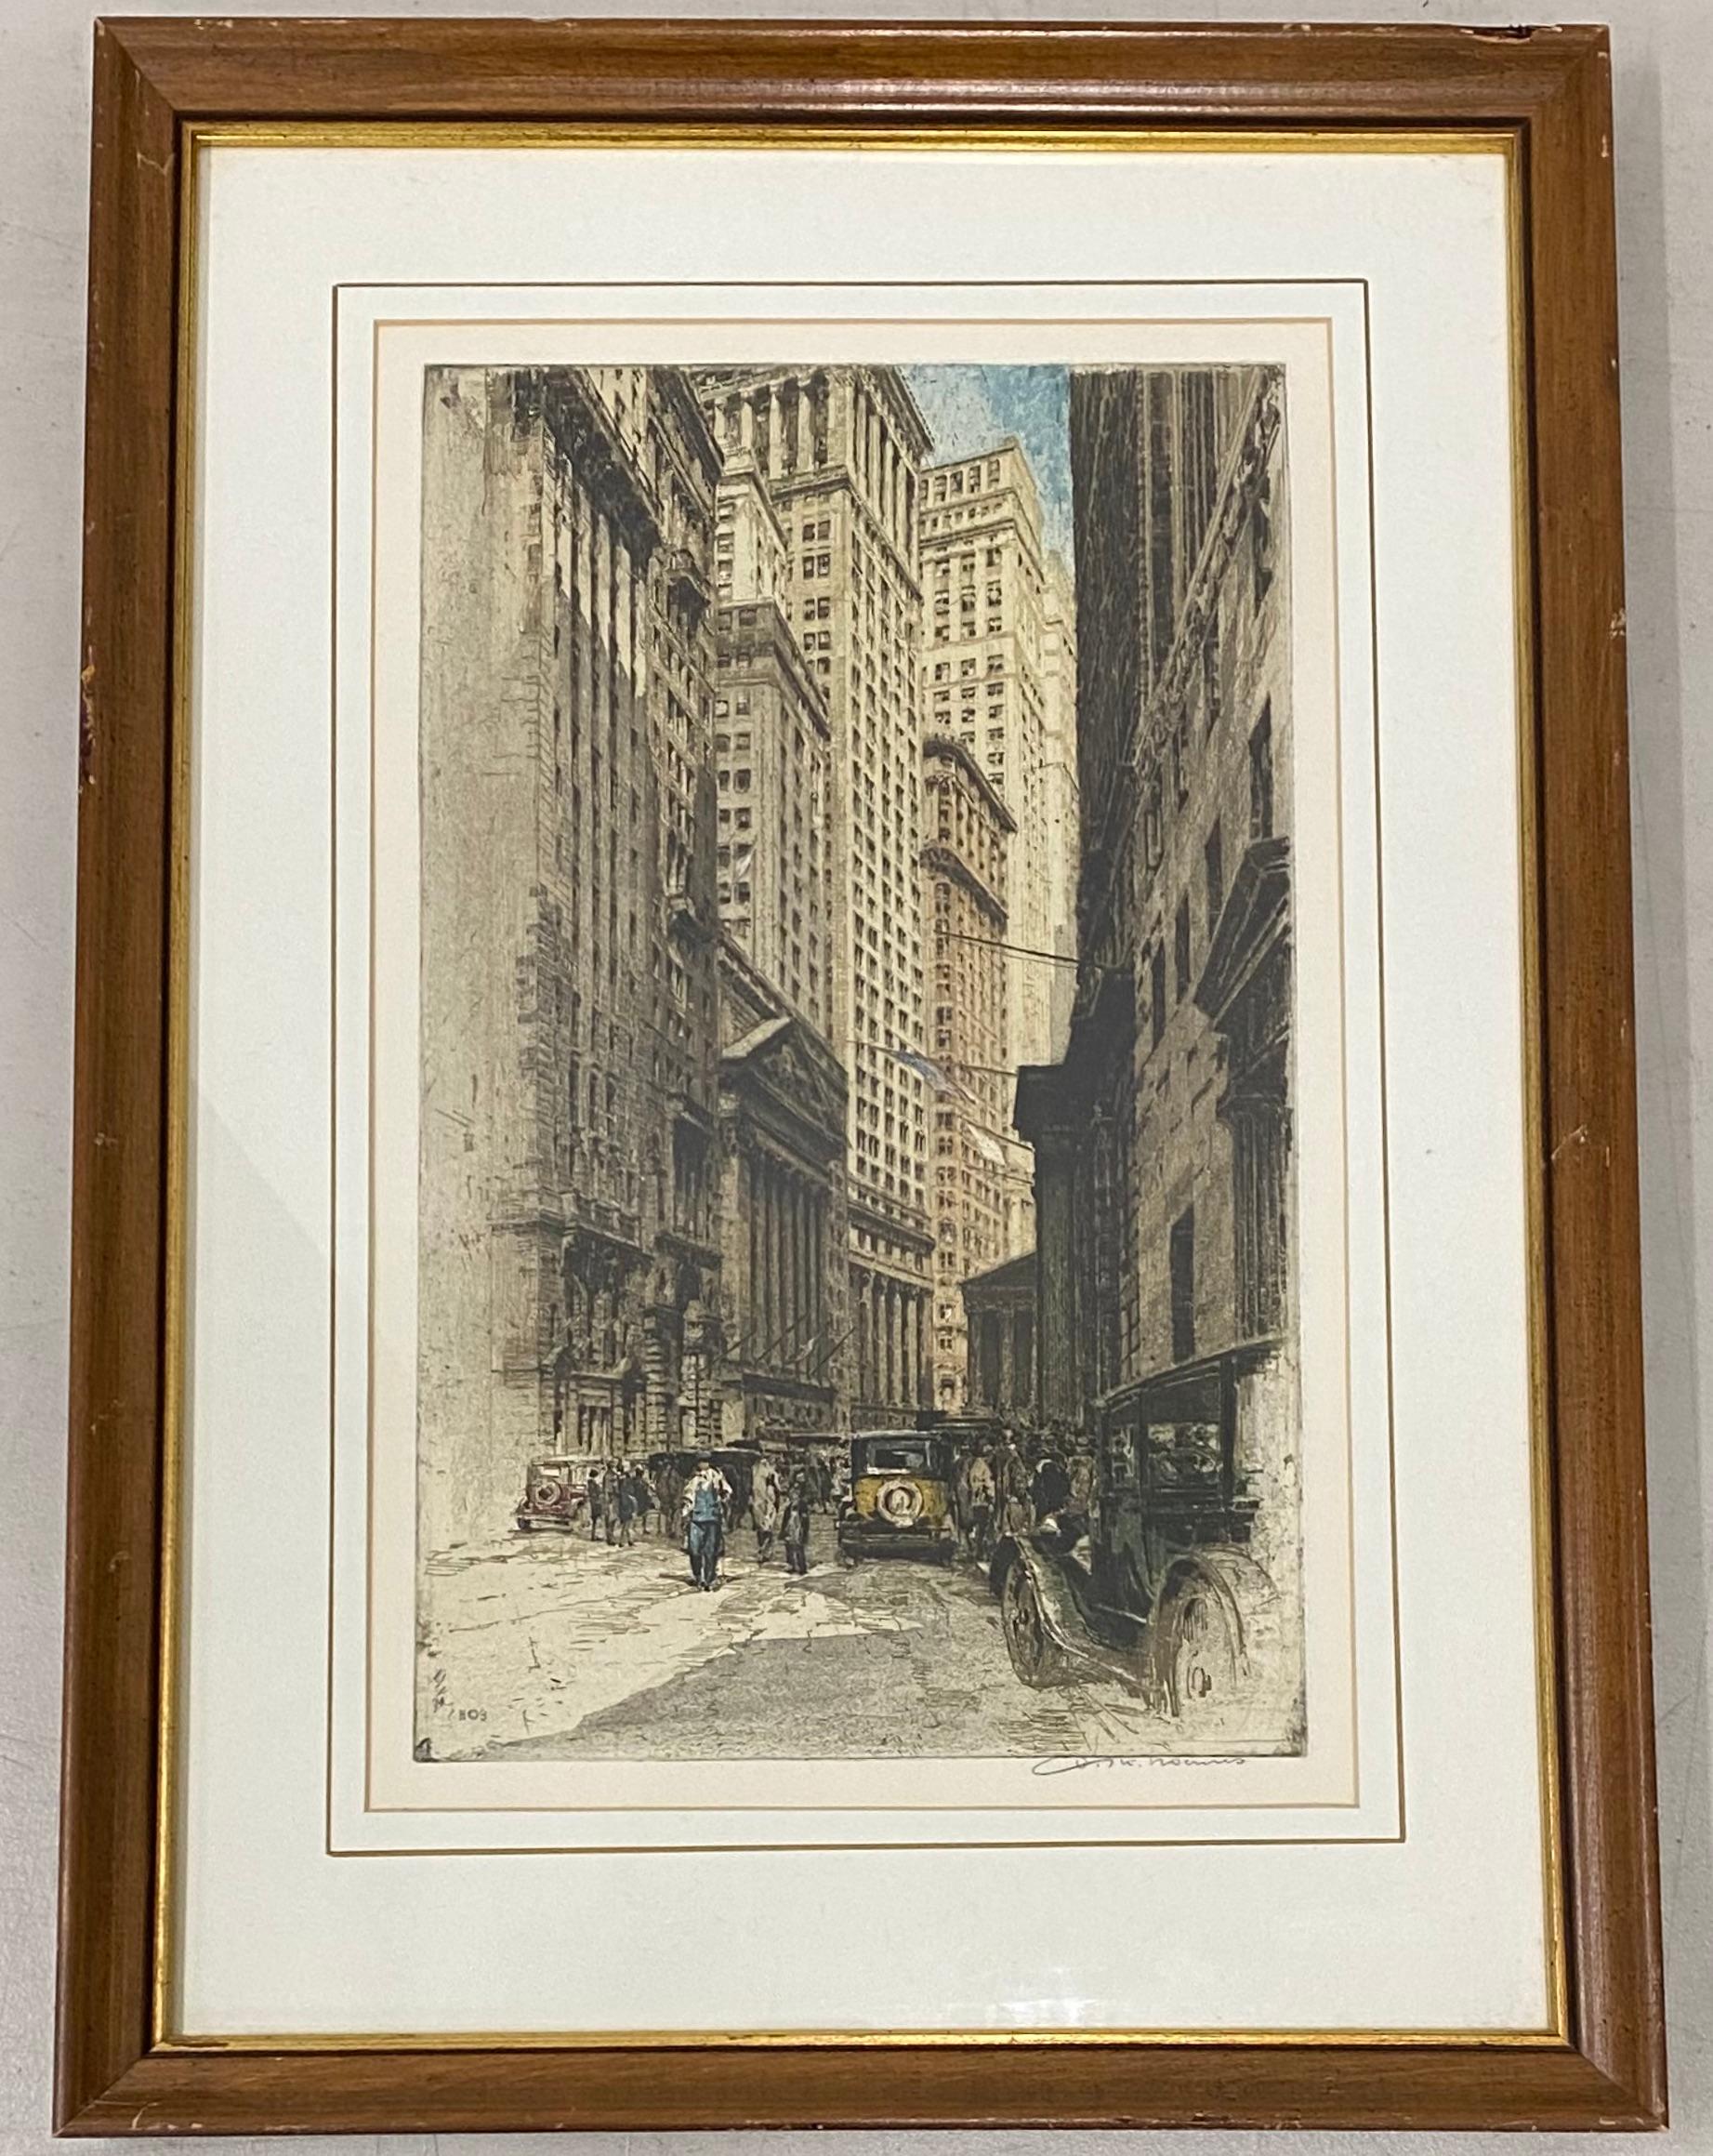 Tanna Kasimir-Hoernes "Broad Street, New York" Eau-forte originale avec aquatinte C.1930s.

Dimensions de l'assiette : 10,25" de large x 17,75" de haut

Le cadre mesure 19" de large x 26" de haut.

La gravure est en très bon état (elle n'a pas été